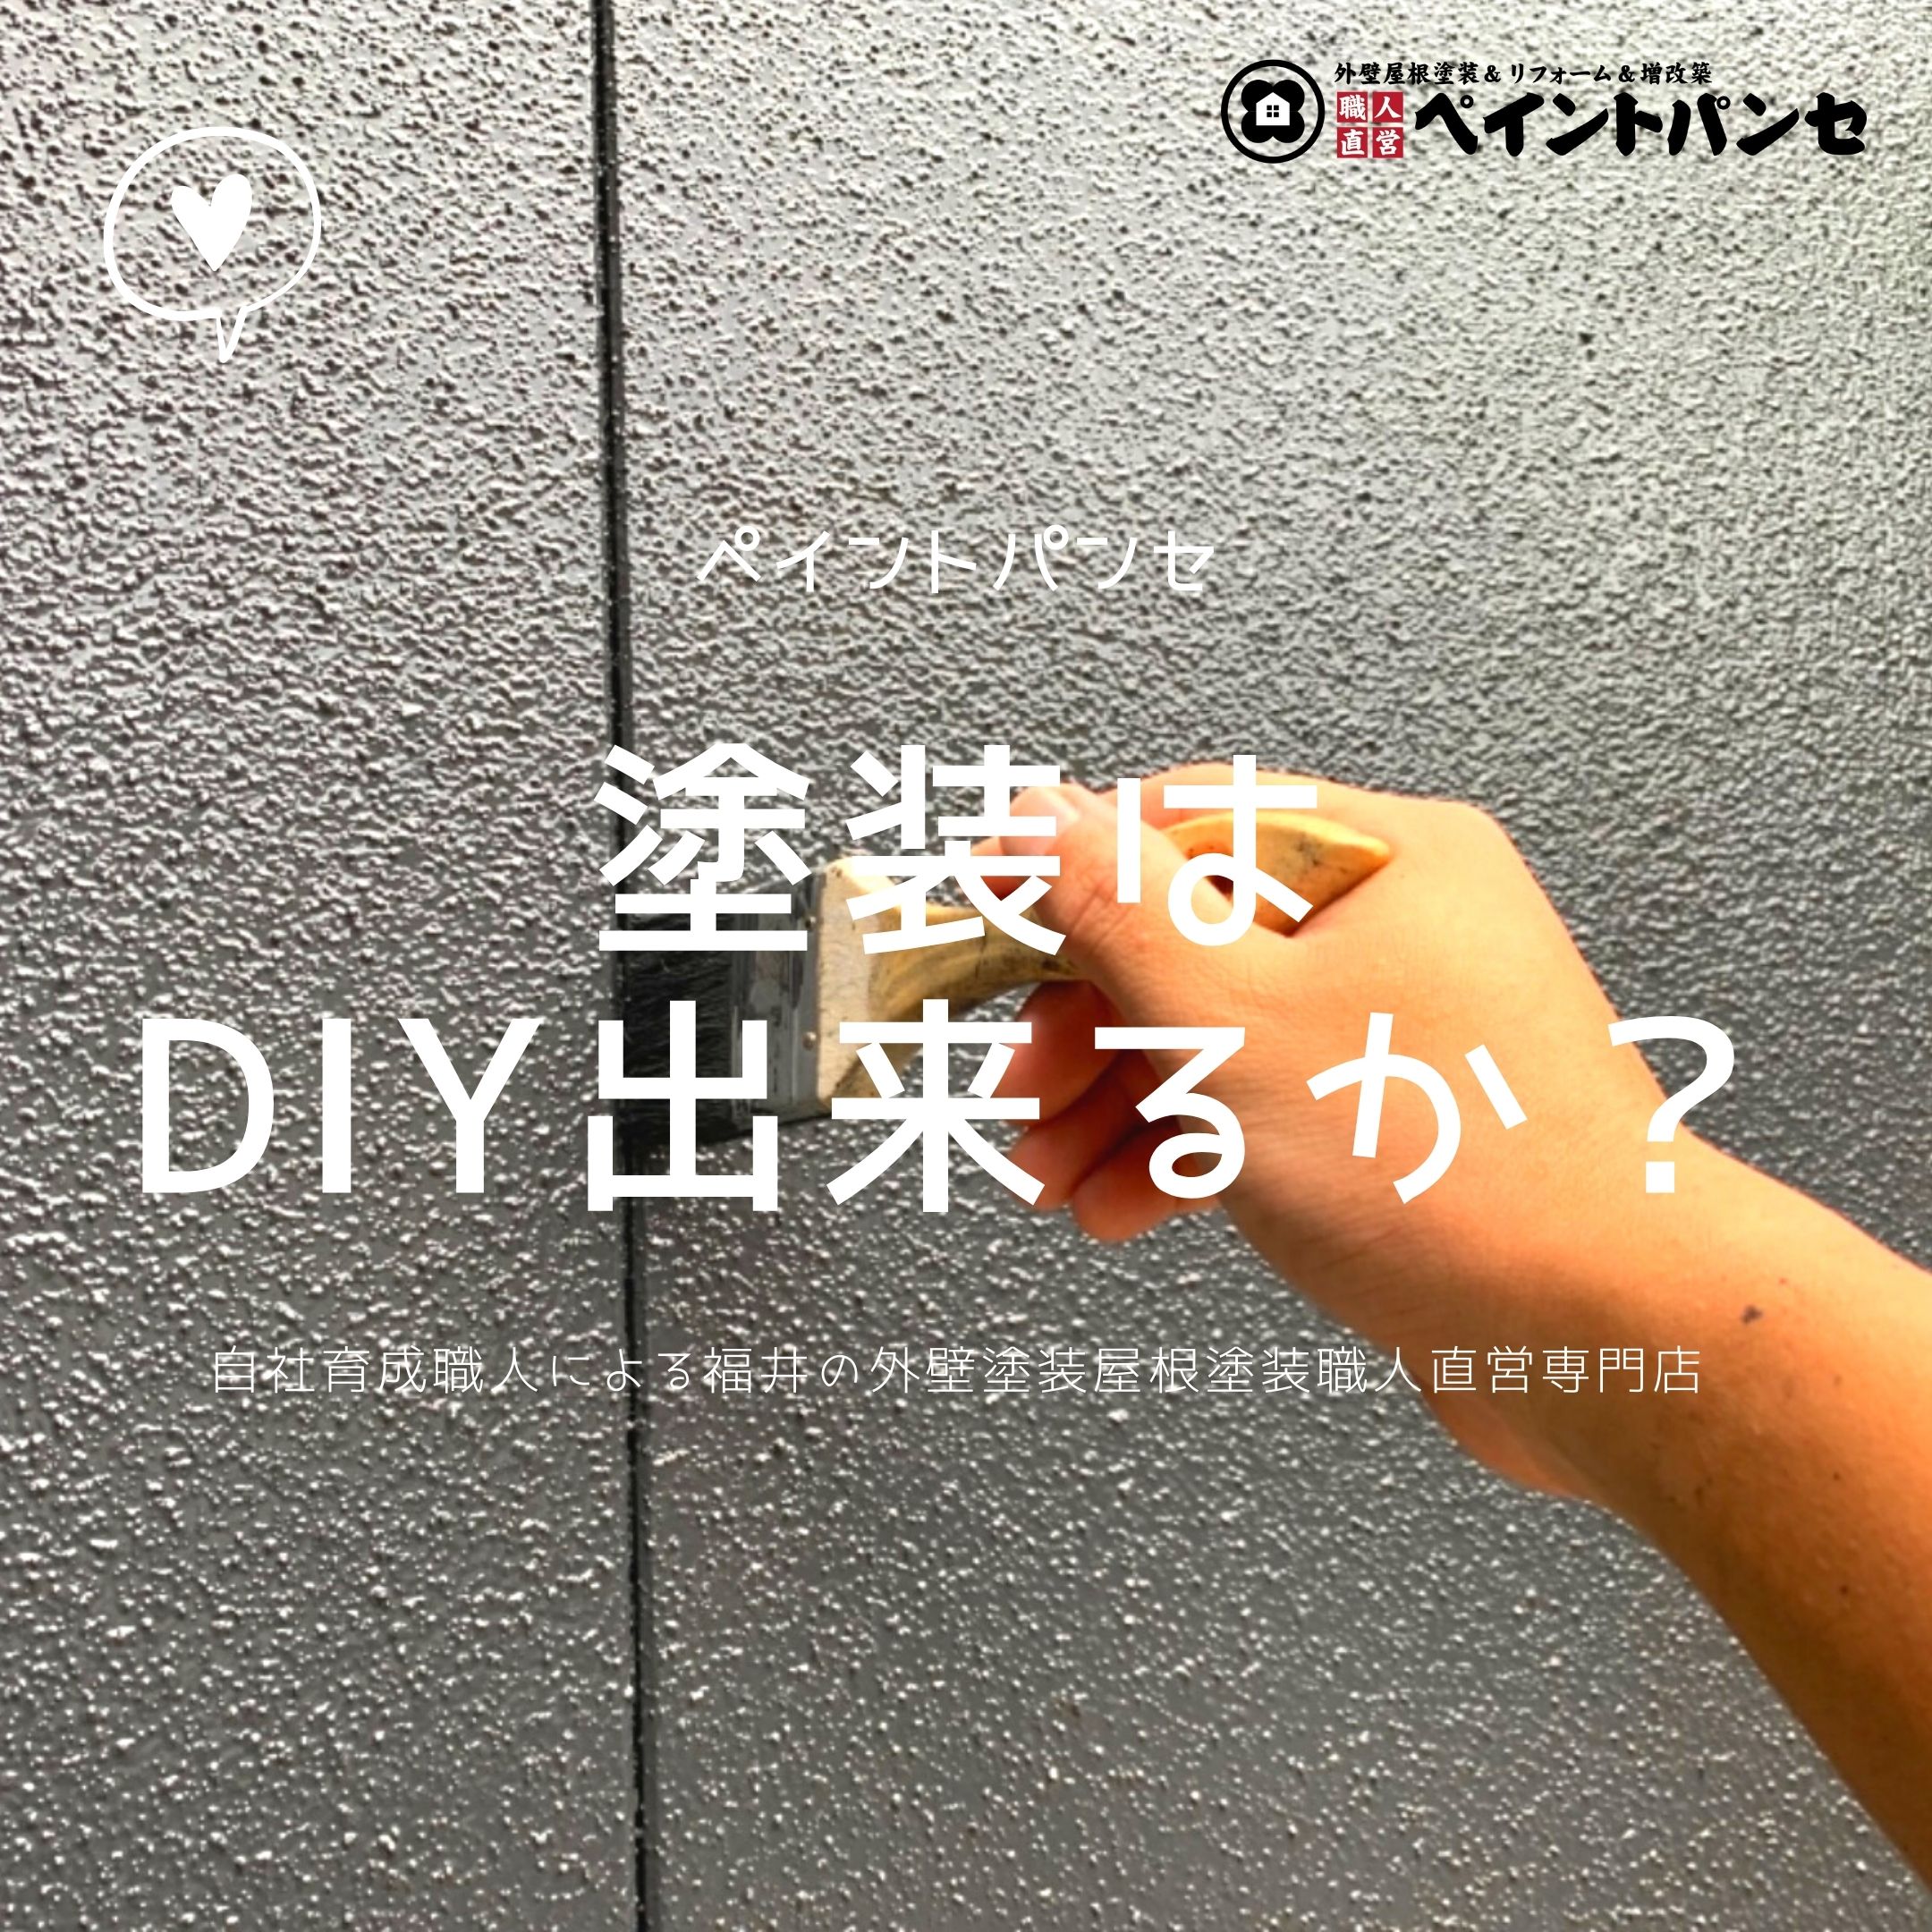 外壁塗装はdiyでできる 福井の専門家にお任せください 福井市 鯖江市の外壁塗装ならペイントパンセ